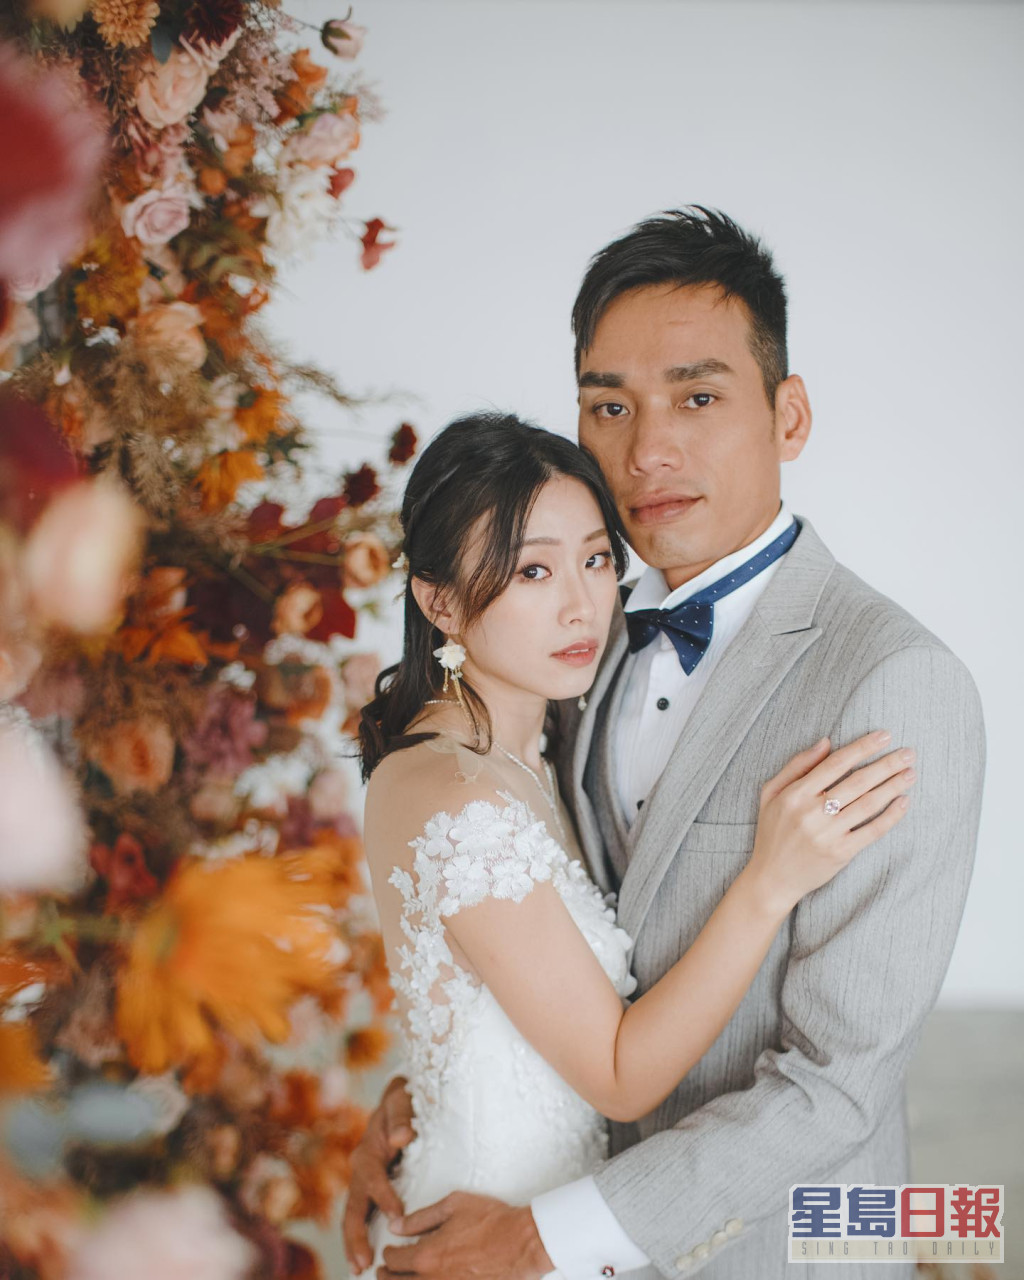 张诗欣与TVB幕后人男友李家胜影婚照。